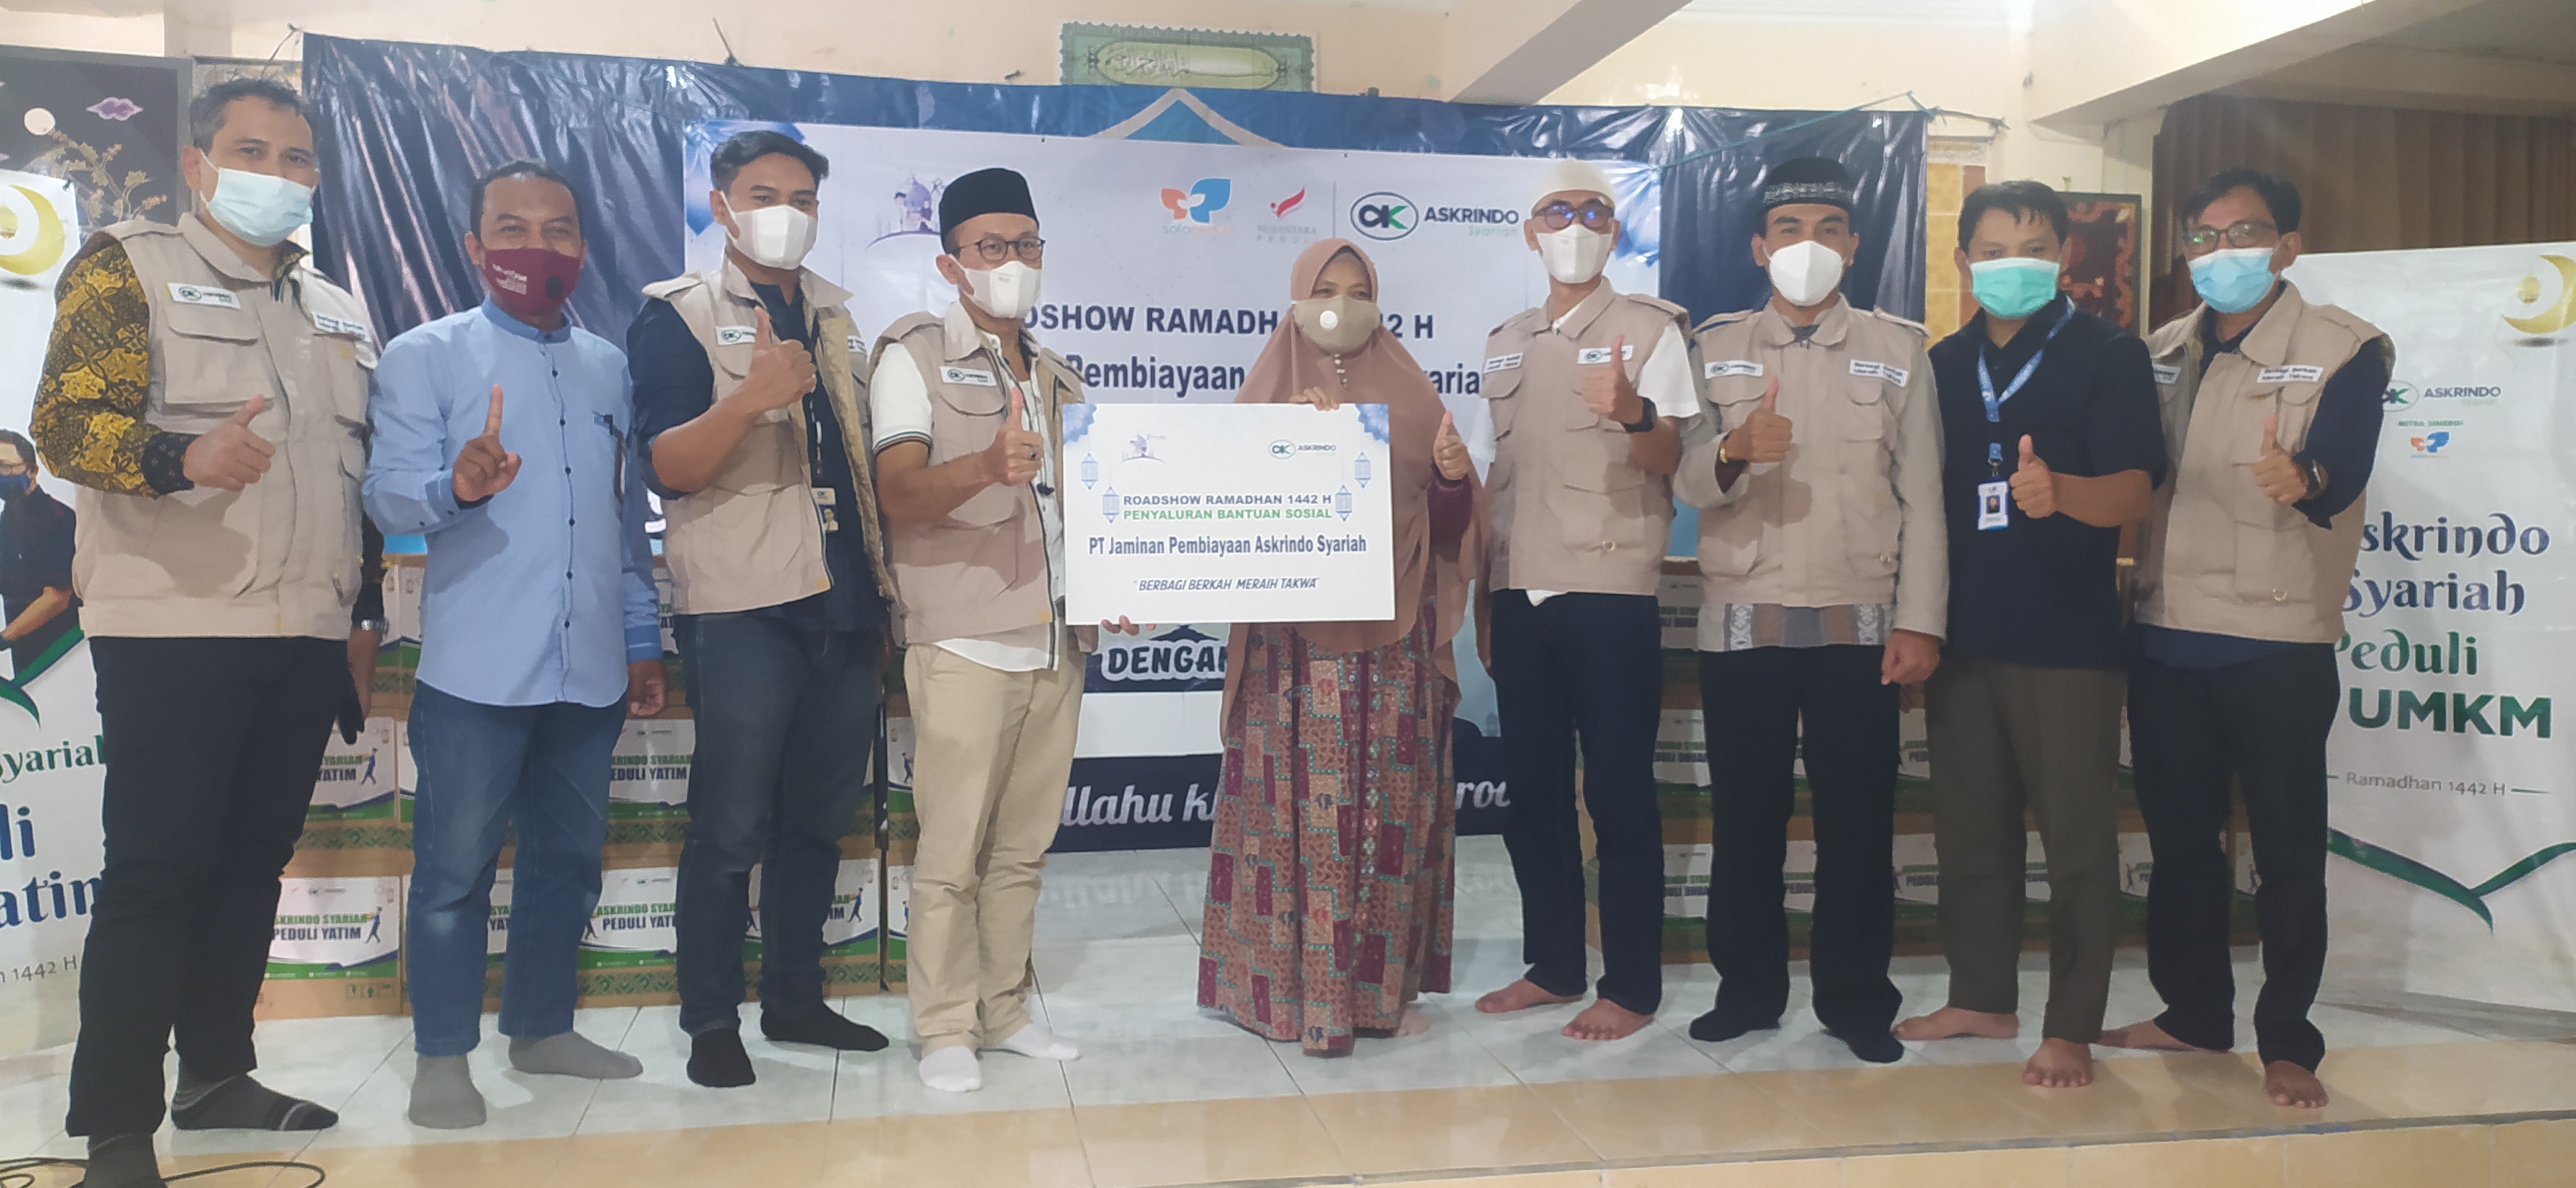 Askrindo Syariah Serahkan Bantuan Sosial Ramadhan di Yogyakarta